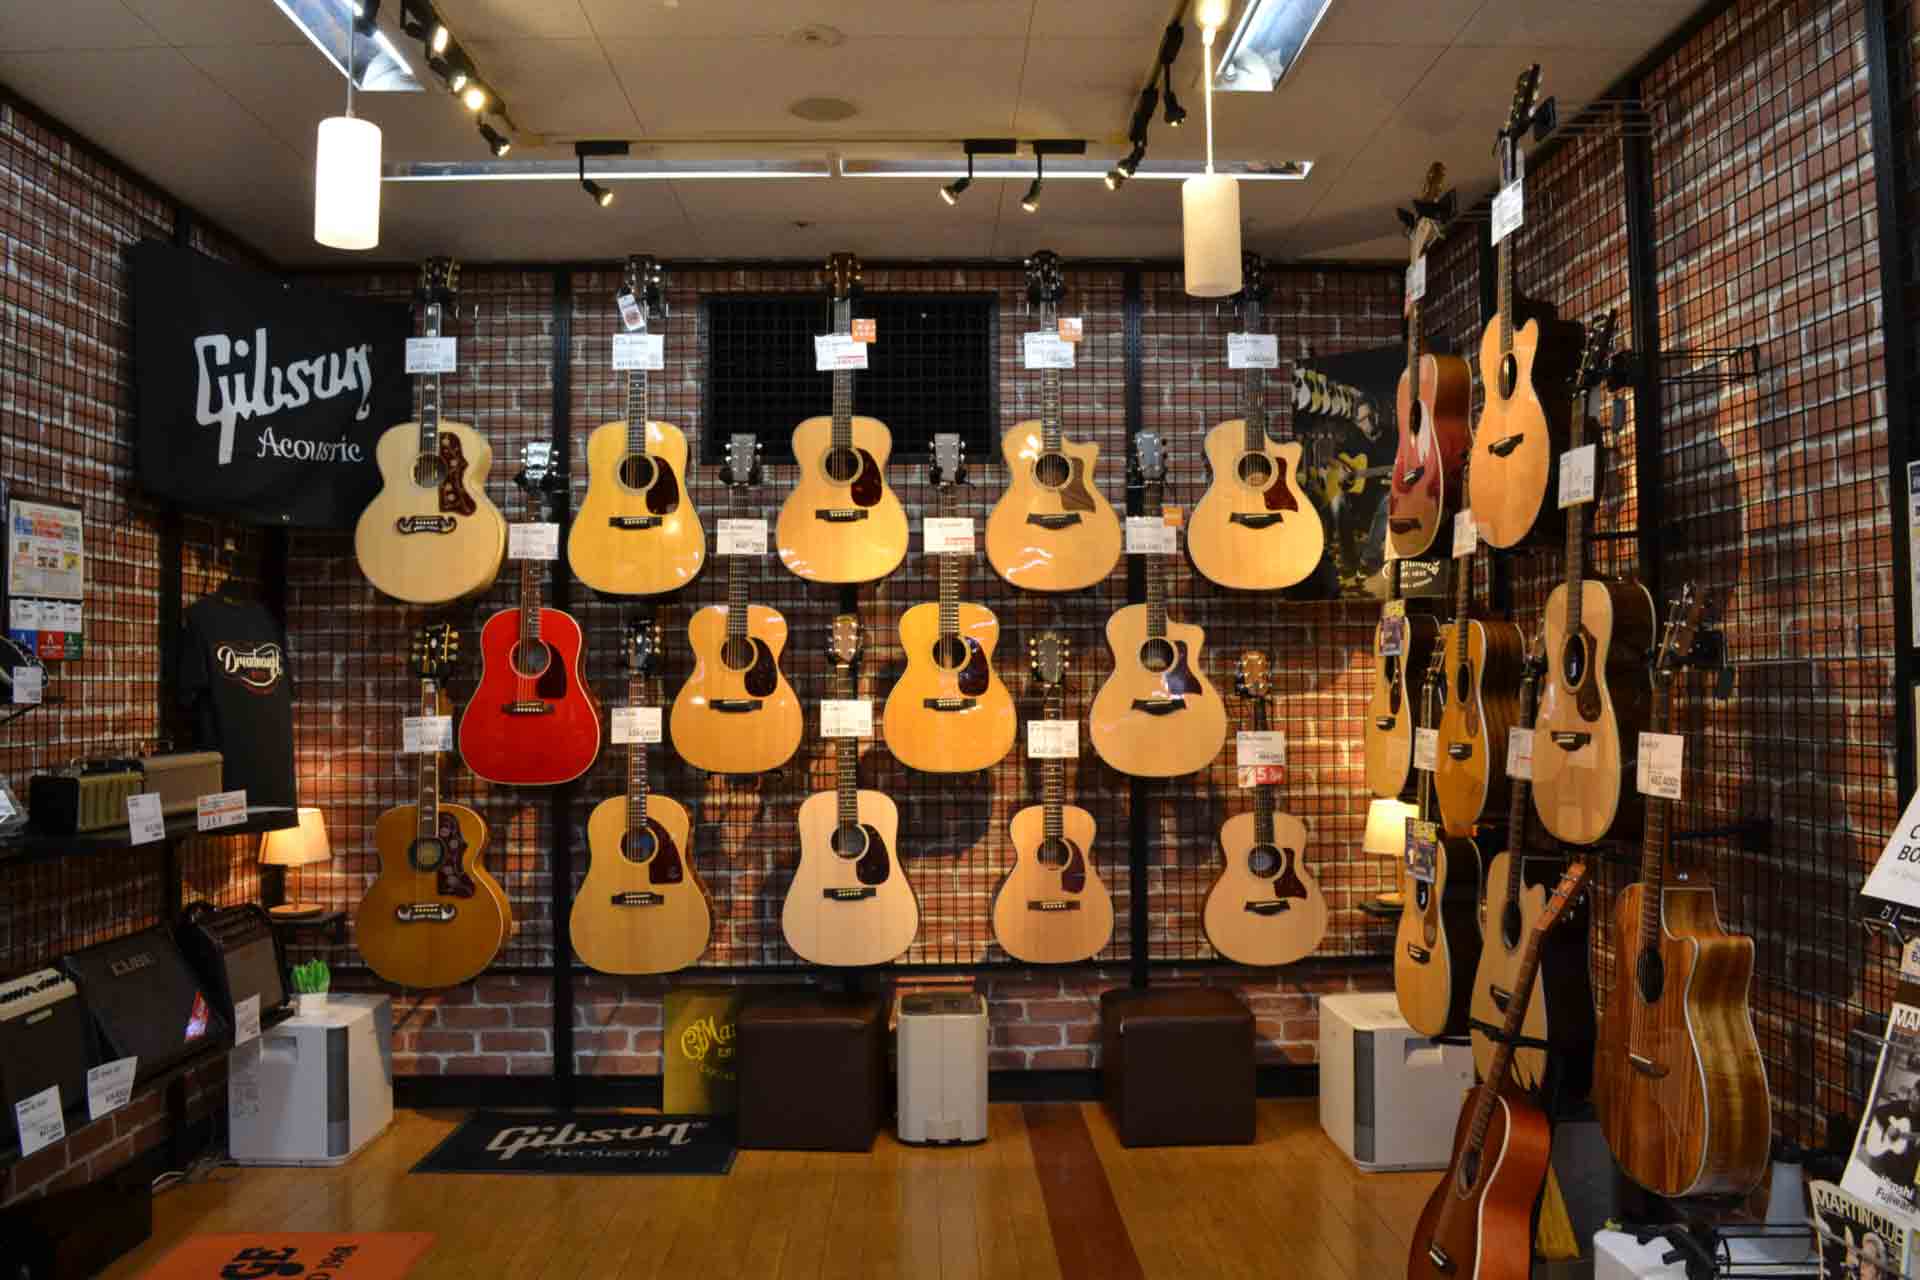 2022年3月に発生した福島県沖地震によるキズ、打痕がついてしまったアコースティックギターを、お買い得価格で放出致します！演奏上の支障は全くなく、まだまだ現役で頑張れるギター達ばかりです。この機会にお買い得に手に入れましょう♪ 詳しい商品状態は、「商品詳細」からご覧ください。 CONTENTSGib […]